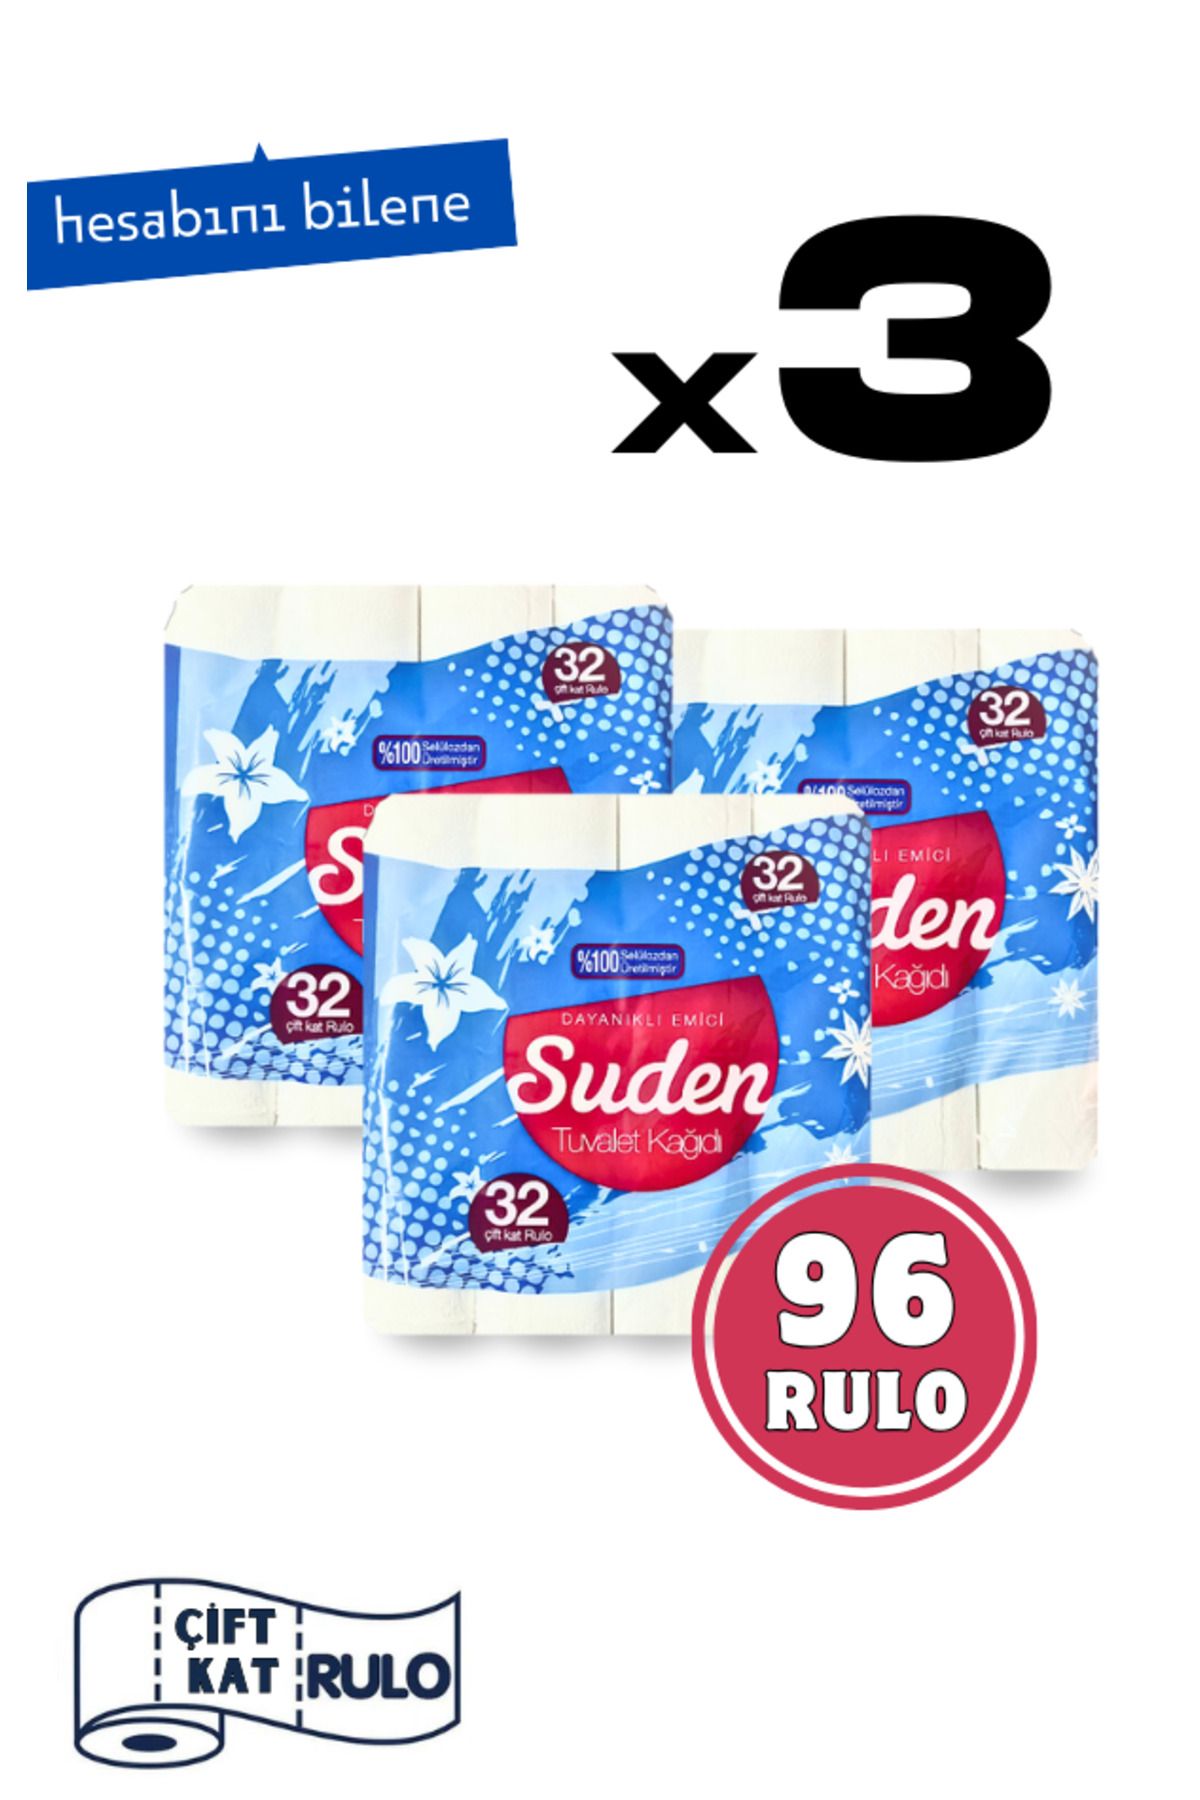 SUDEN Avantaj Paket Tuvalet Kağıdı 3 Paket = 96 Rulo